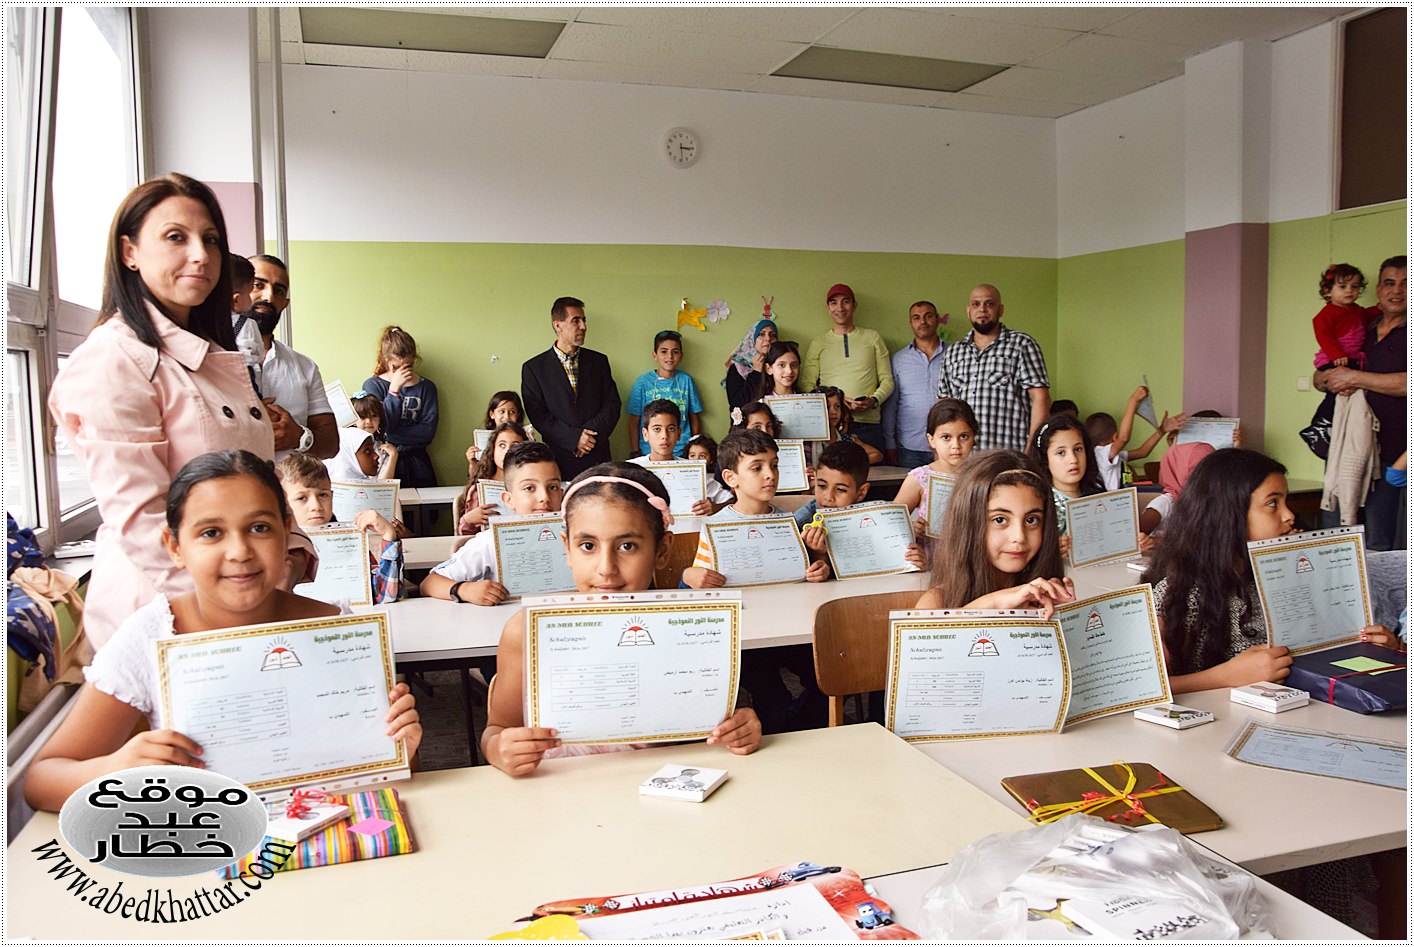 حفل تخريج طلاب مدرسة النور النموذجية لعام 2017 في برلين  وتوزيع شهادات ونتائج طلاب وطالبات المدرسة